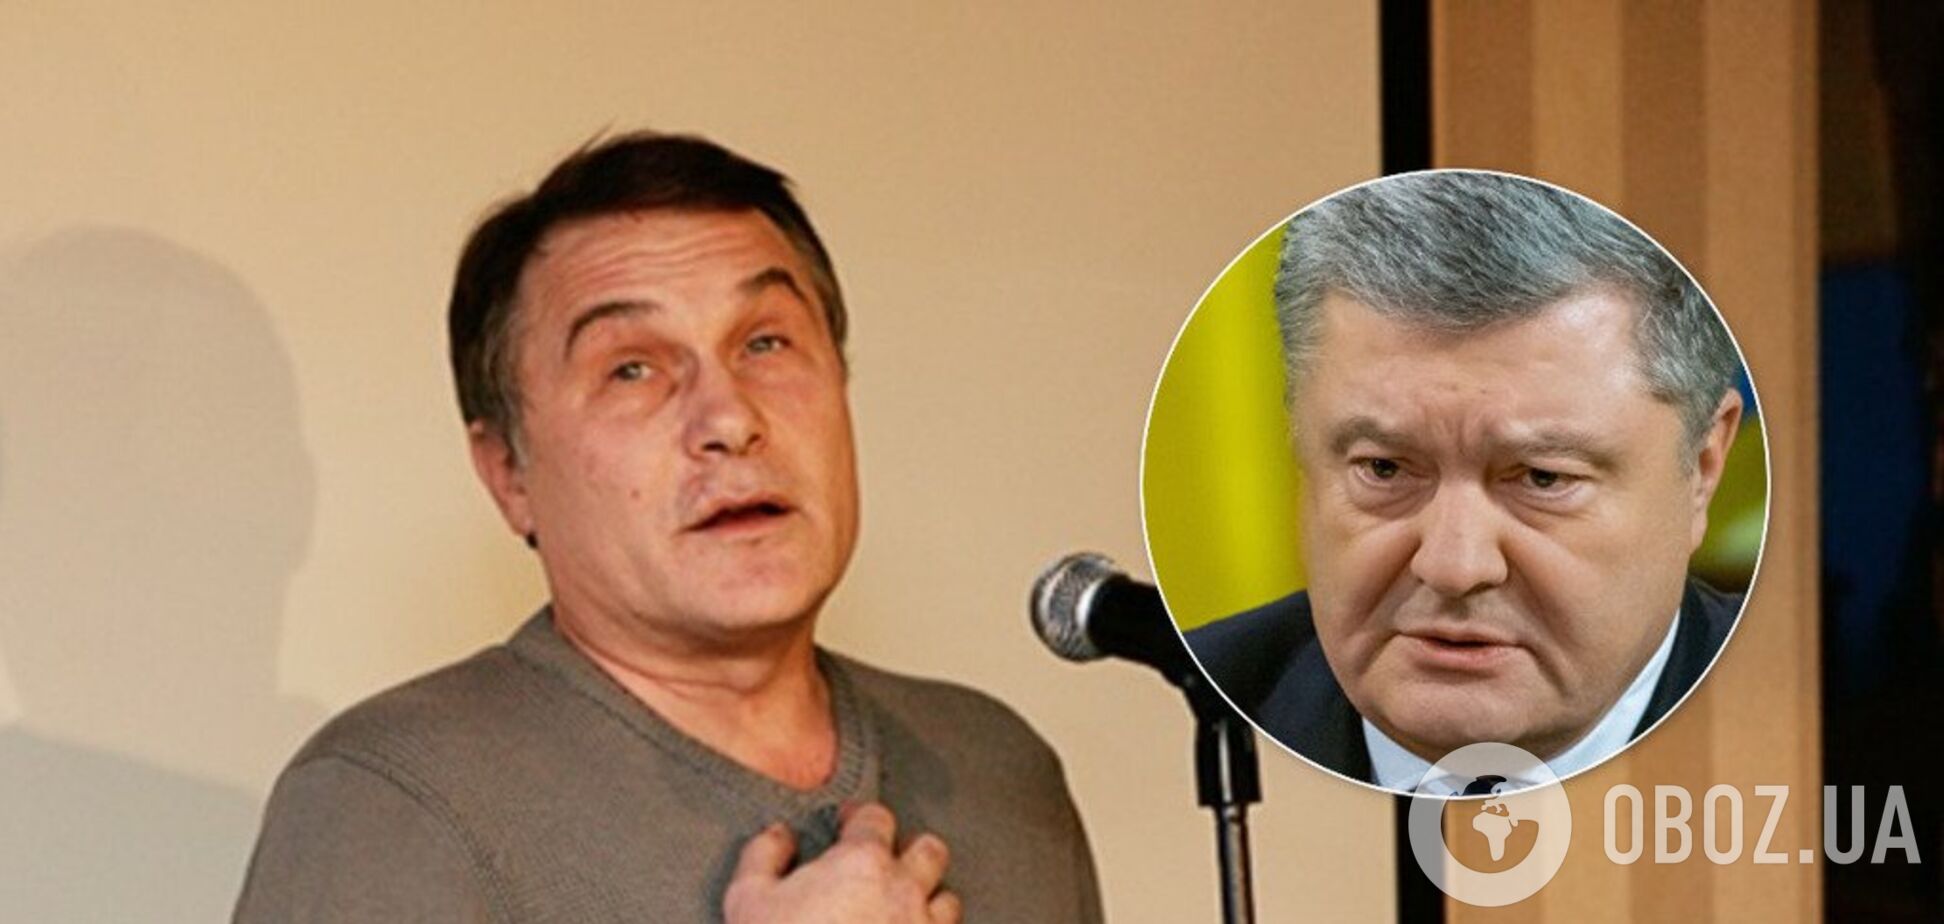 Критикует Порошенко, топит за КПРФ: режиссер 'Слуги народа' попал в скандал